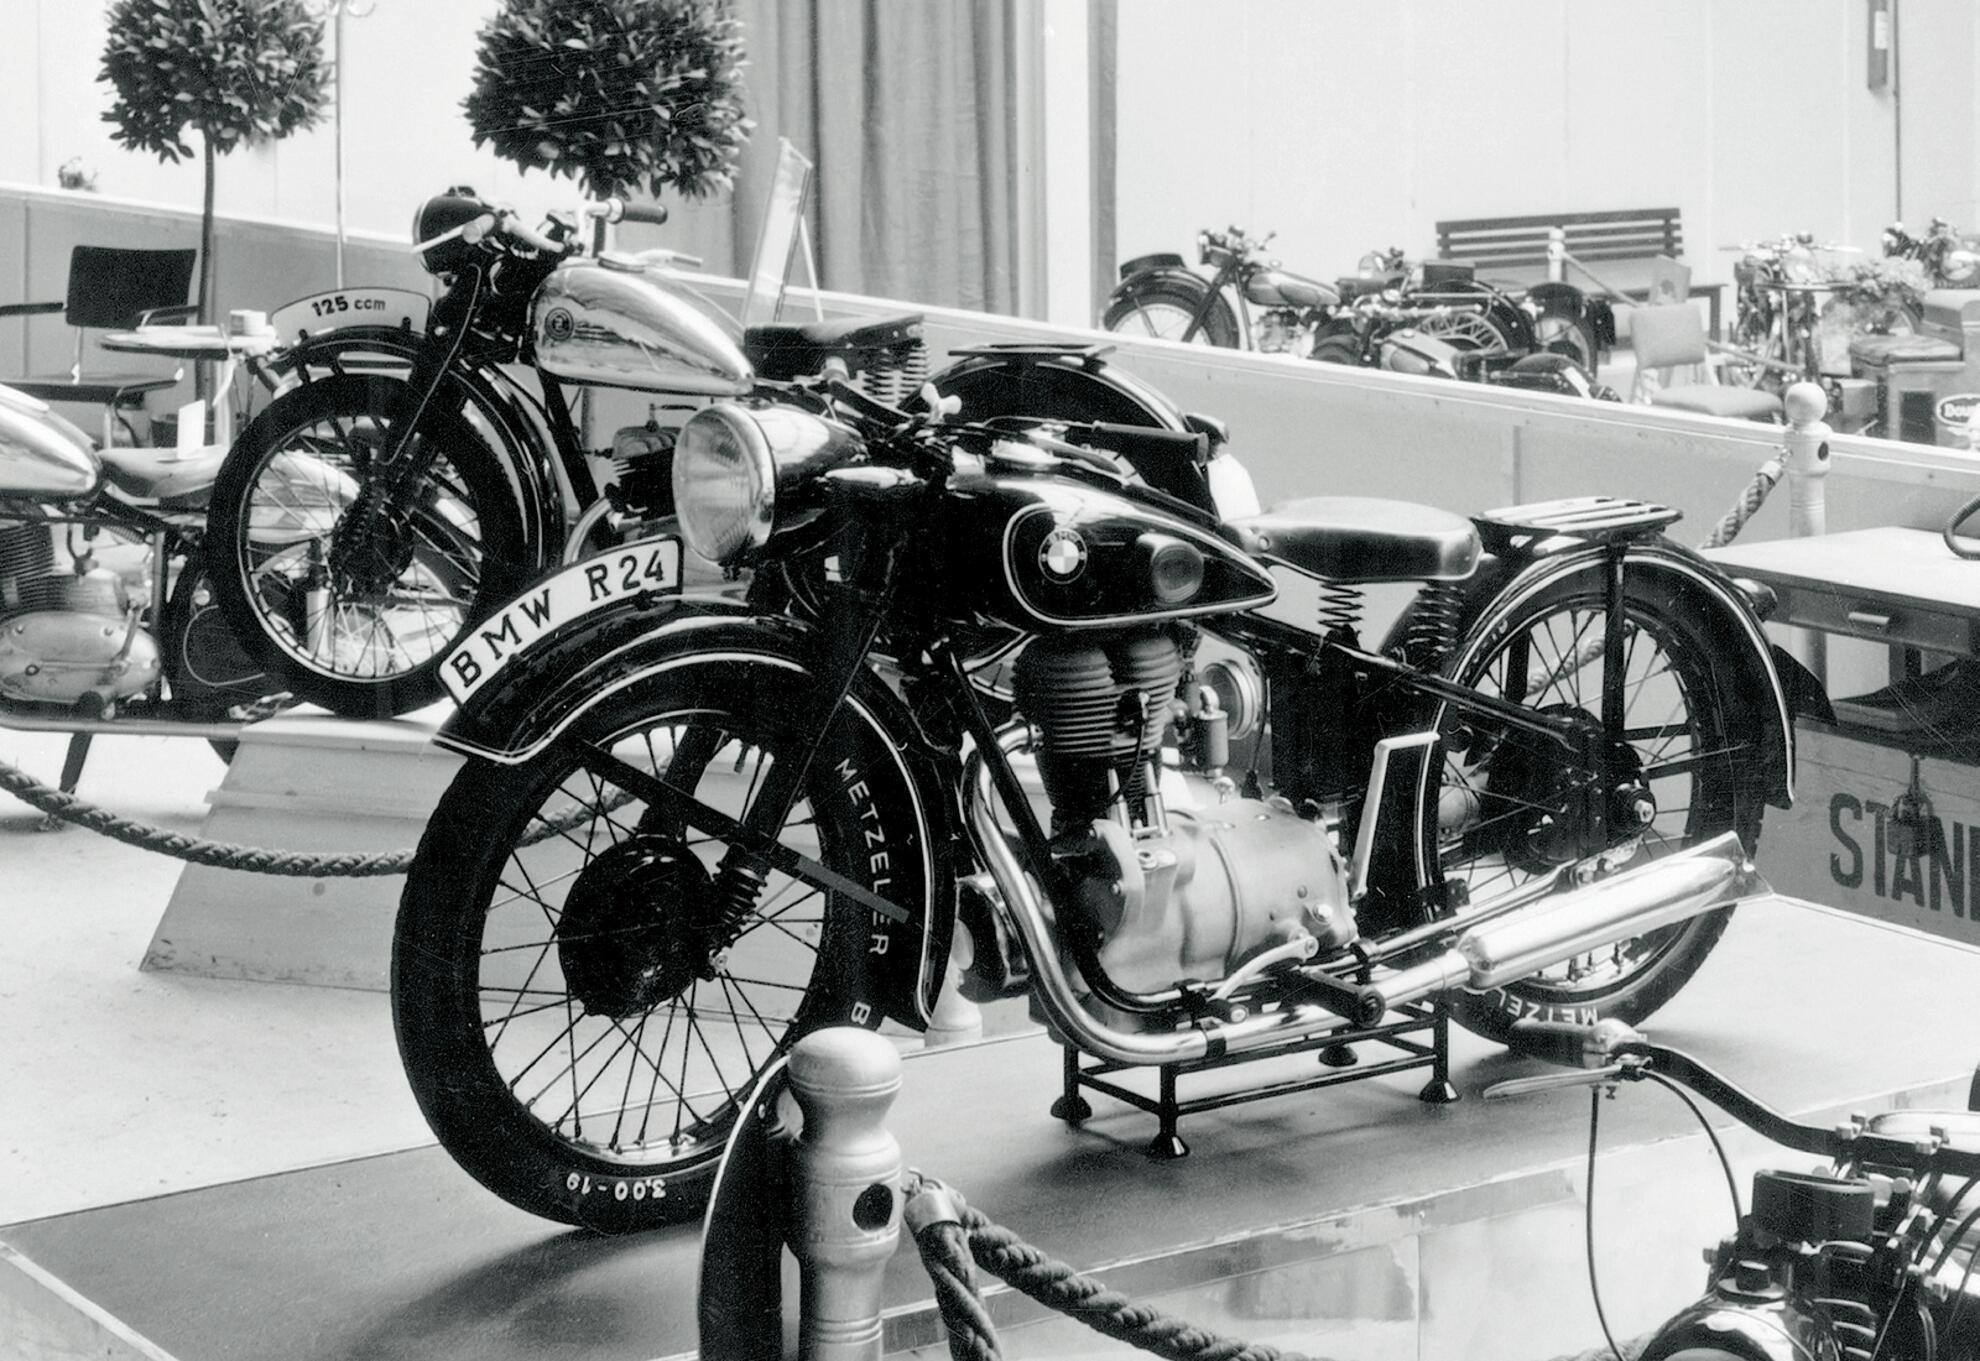 Die BMW R24 erstes Motorrad nach dem zweiten Weltkrieg